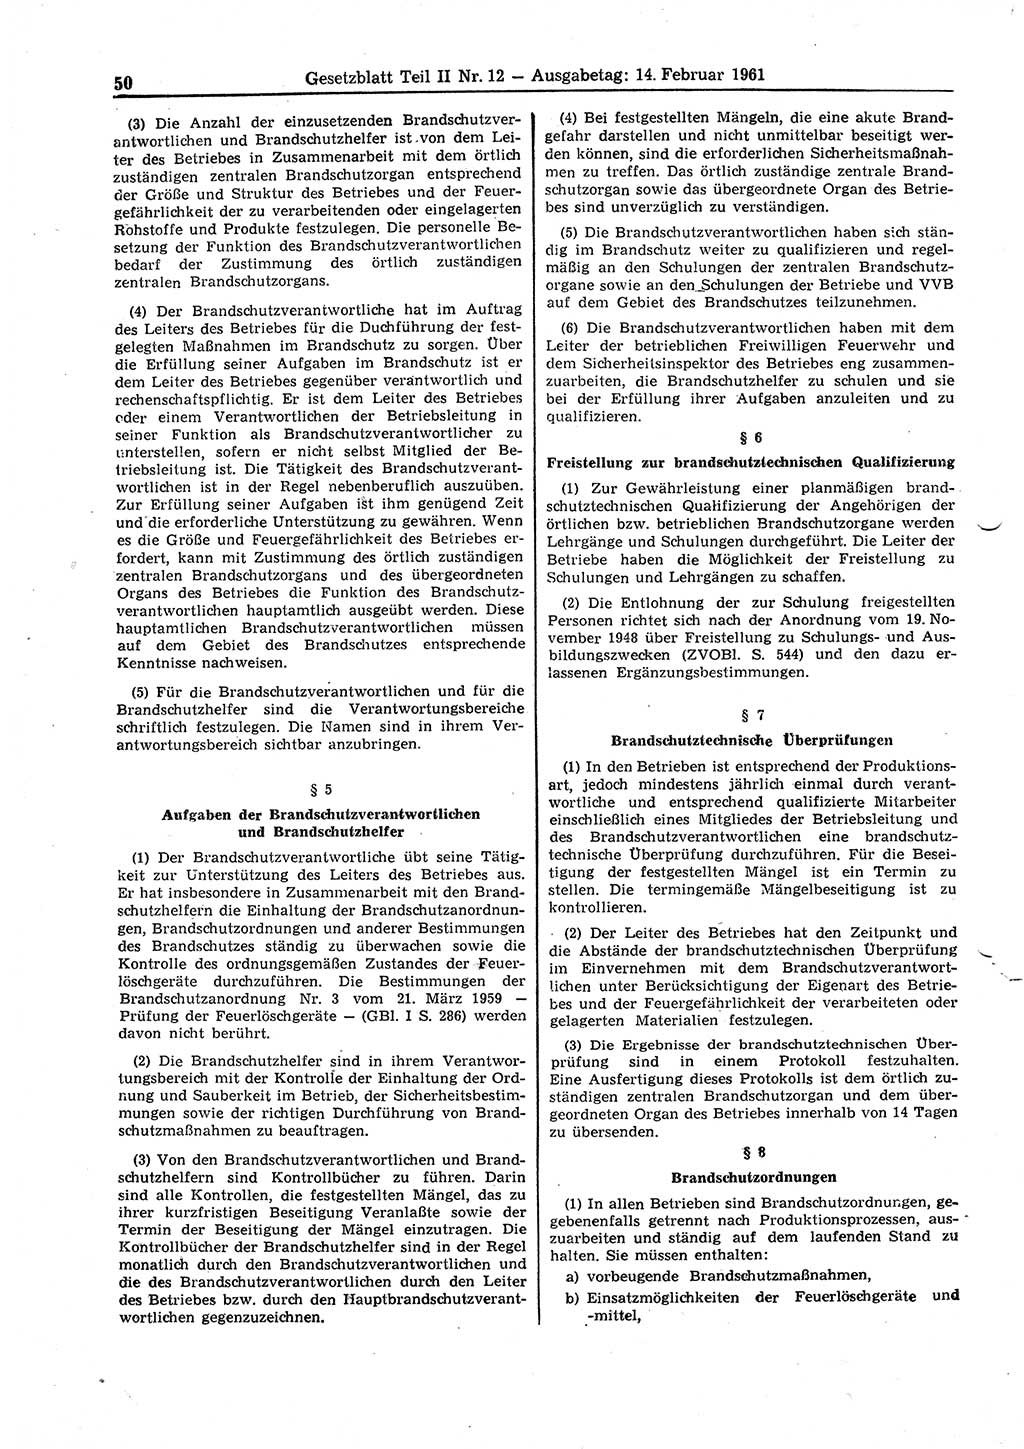 Gesetzblatt (GBl.) der Deutschen Demokratischen Republik (DDR) Teil ⅠⅠ 1961, Seite 50 (GBl. DDR ⅠⅠ 1961, S. 50)